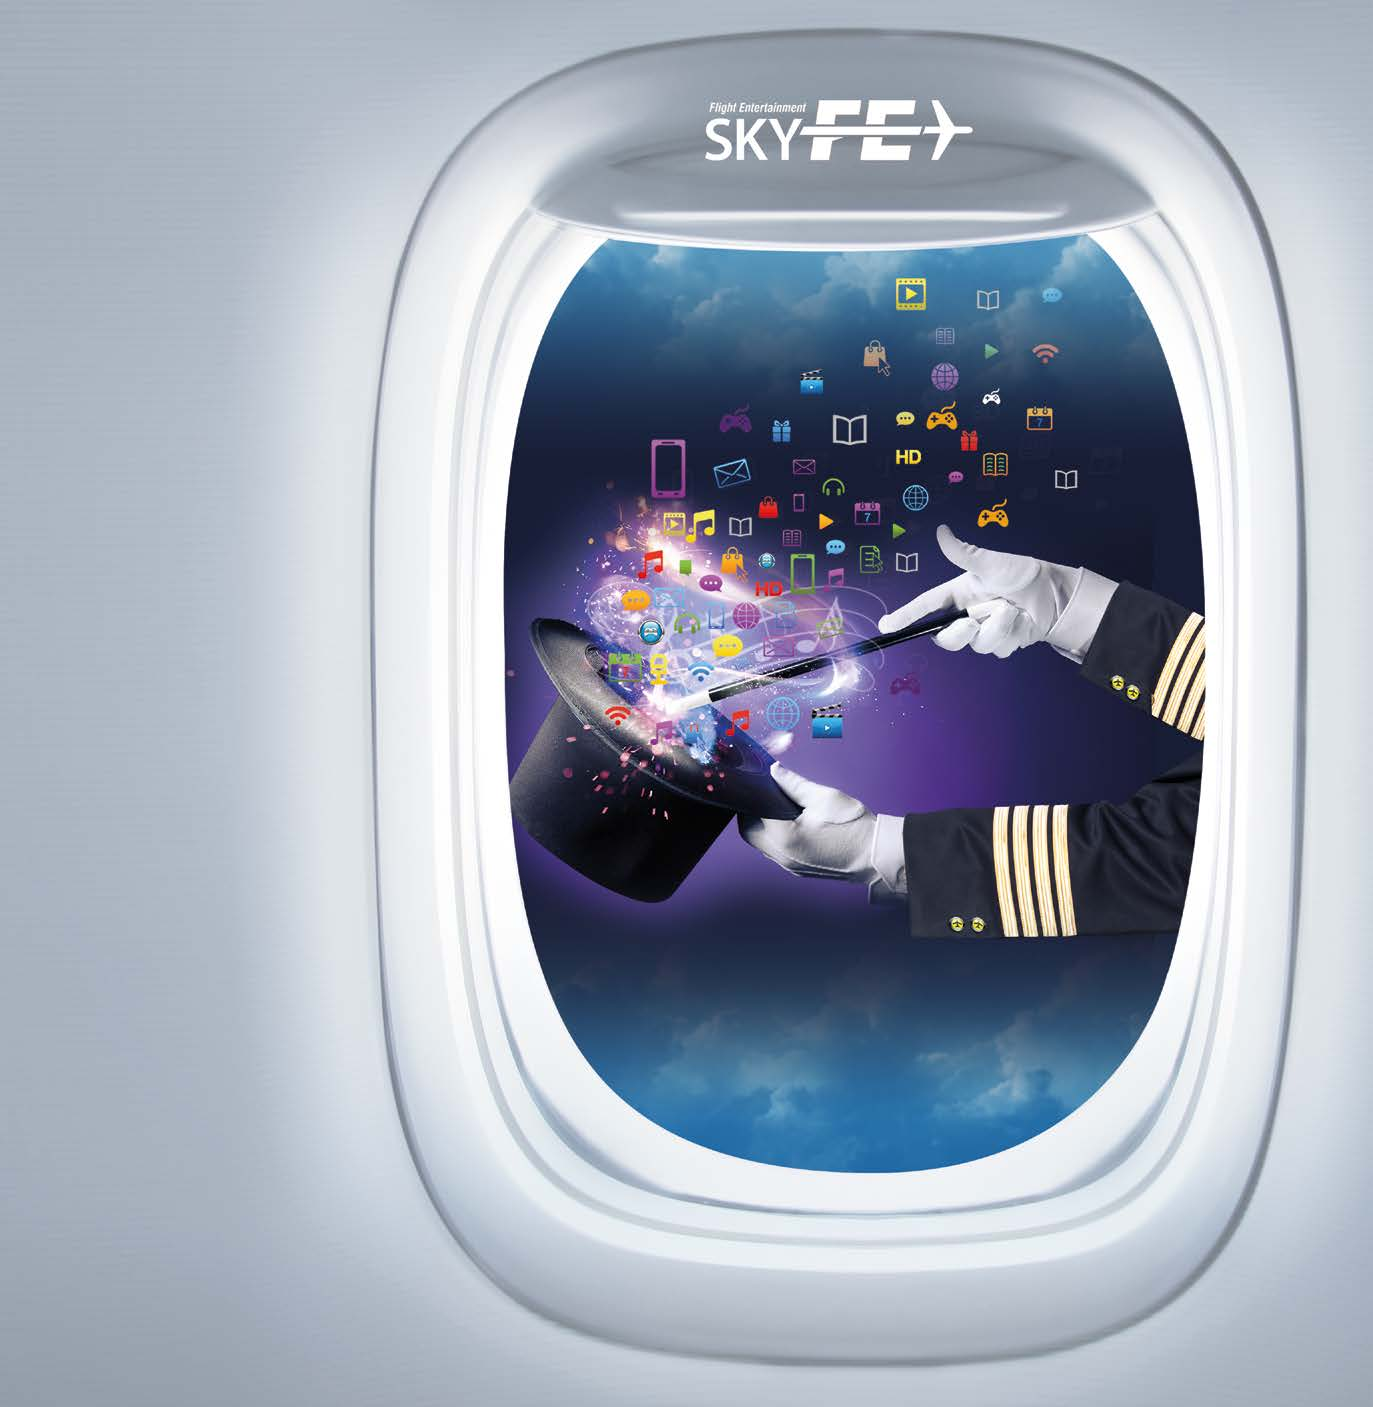 KABLOSUZ SKYFE KOLTUK ARKASI EKRANLI SKYFE Yolcuların kişisel elektronik cihazları (laptop, akıllı telefonlar, tabletler) ile uçuş